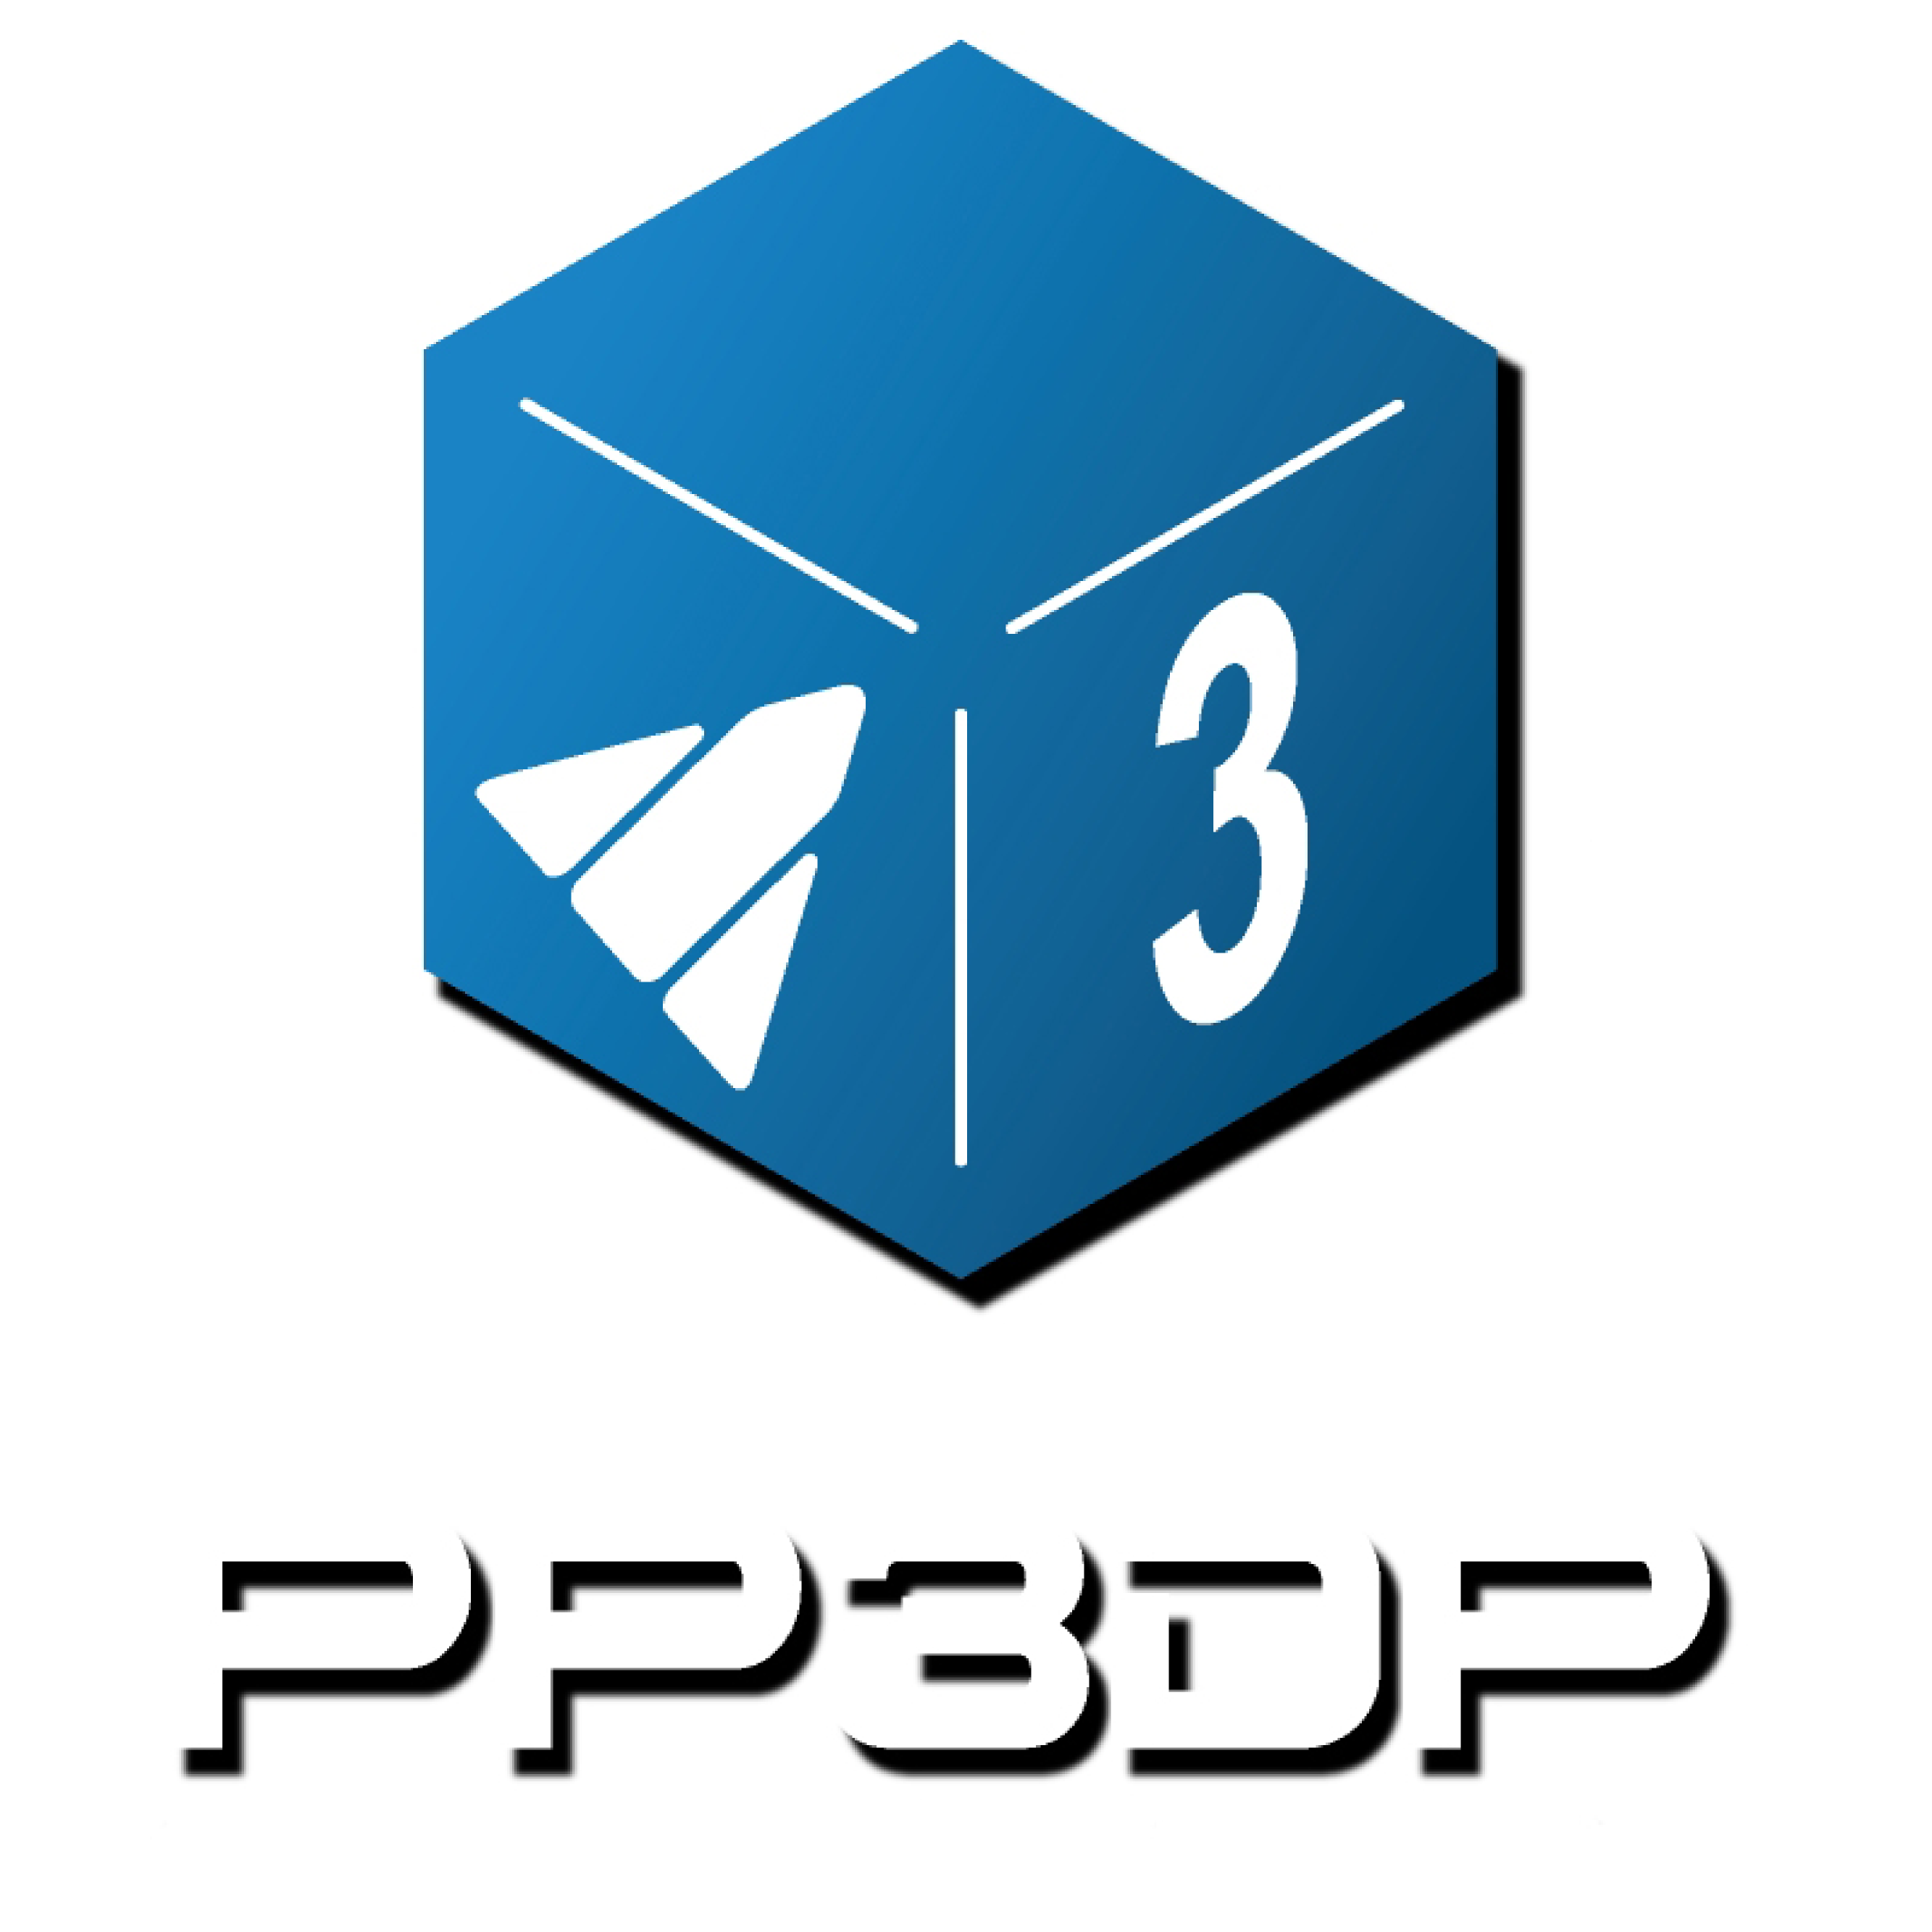 PP3DP logo